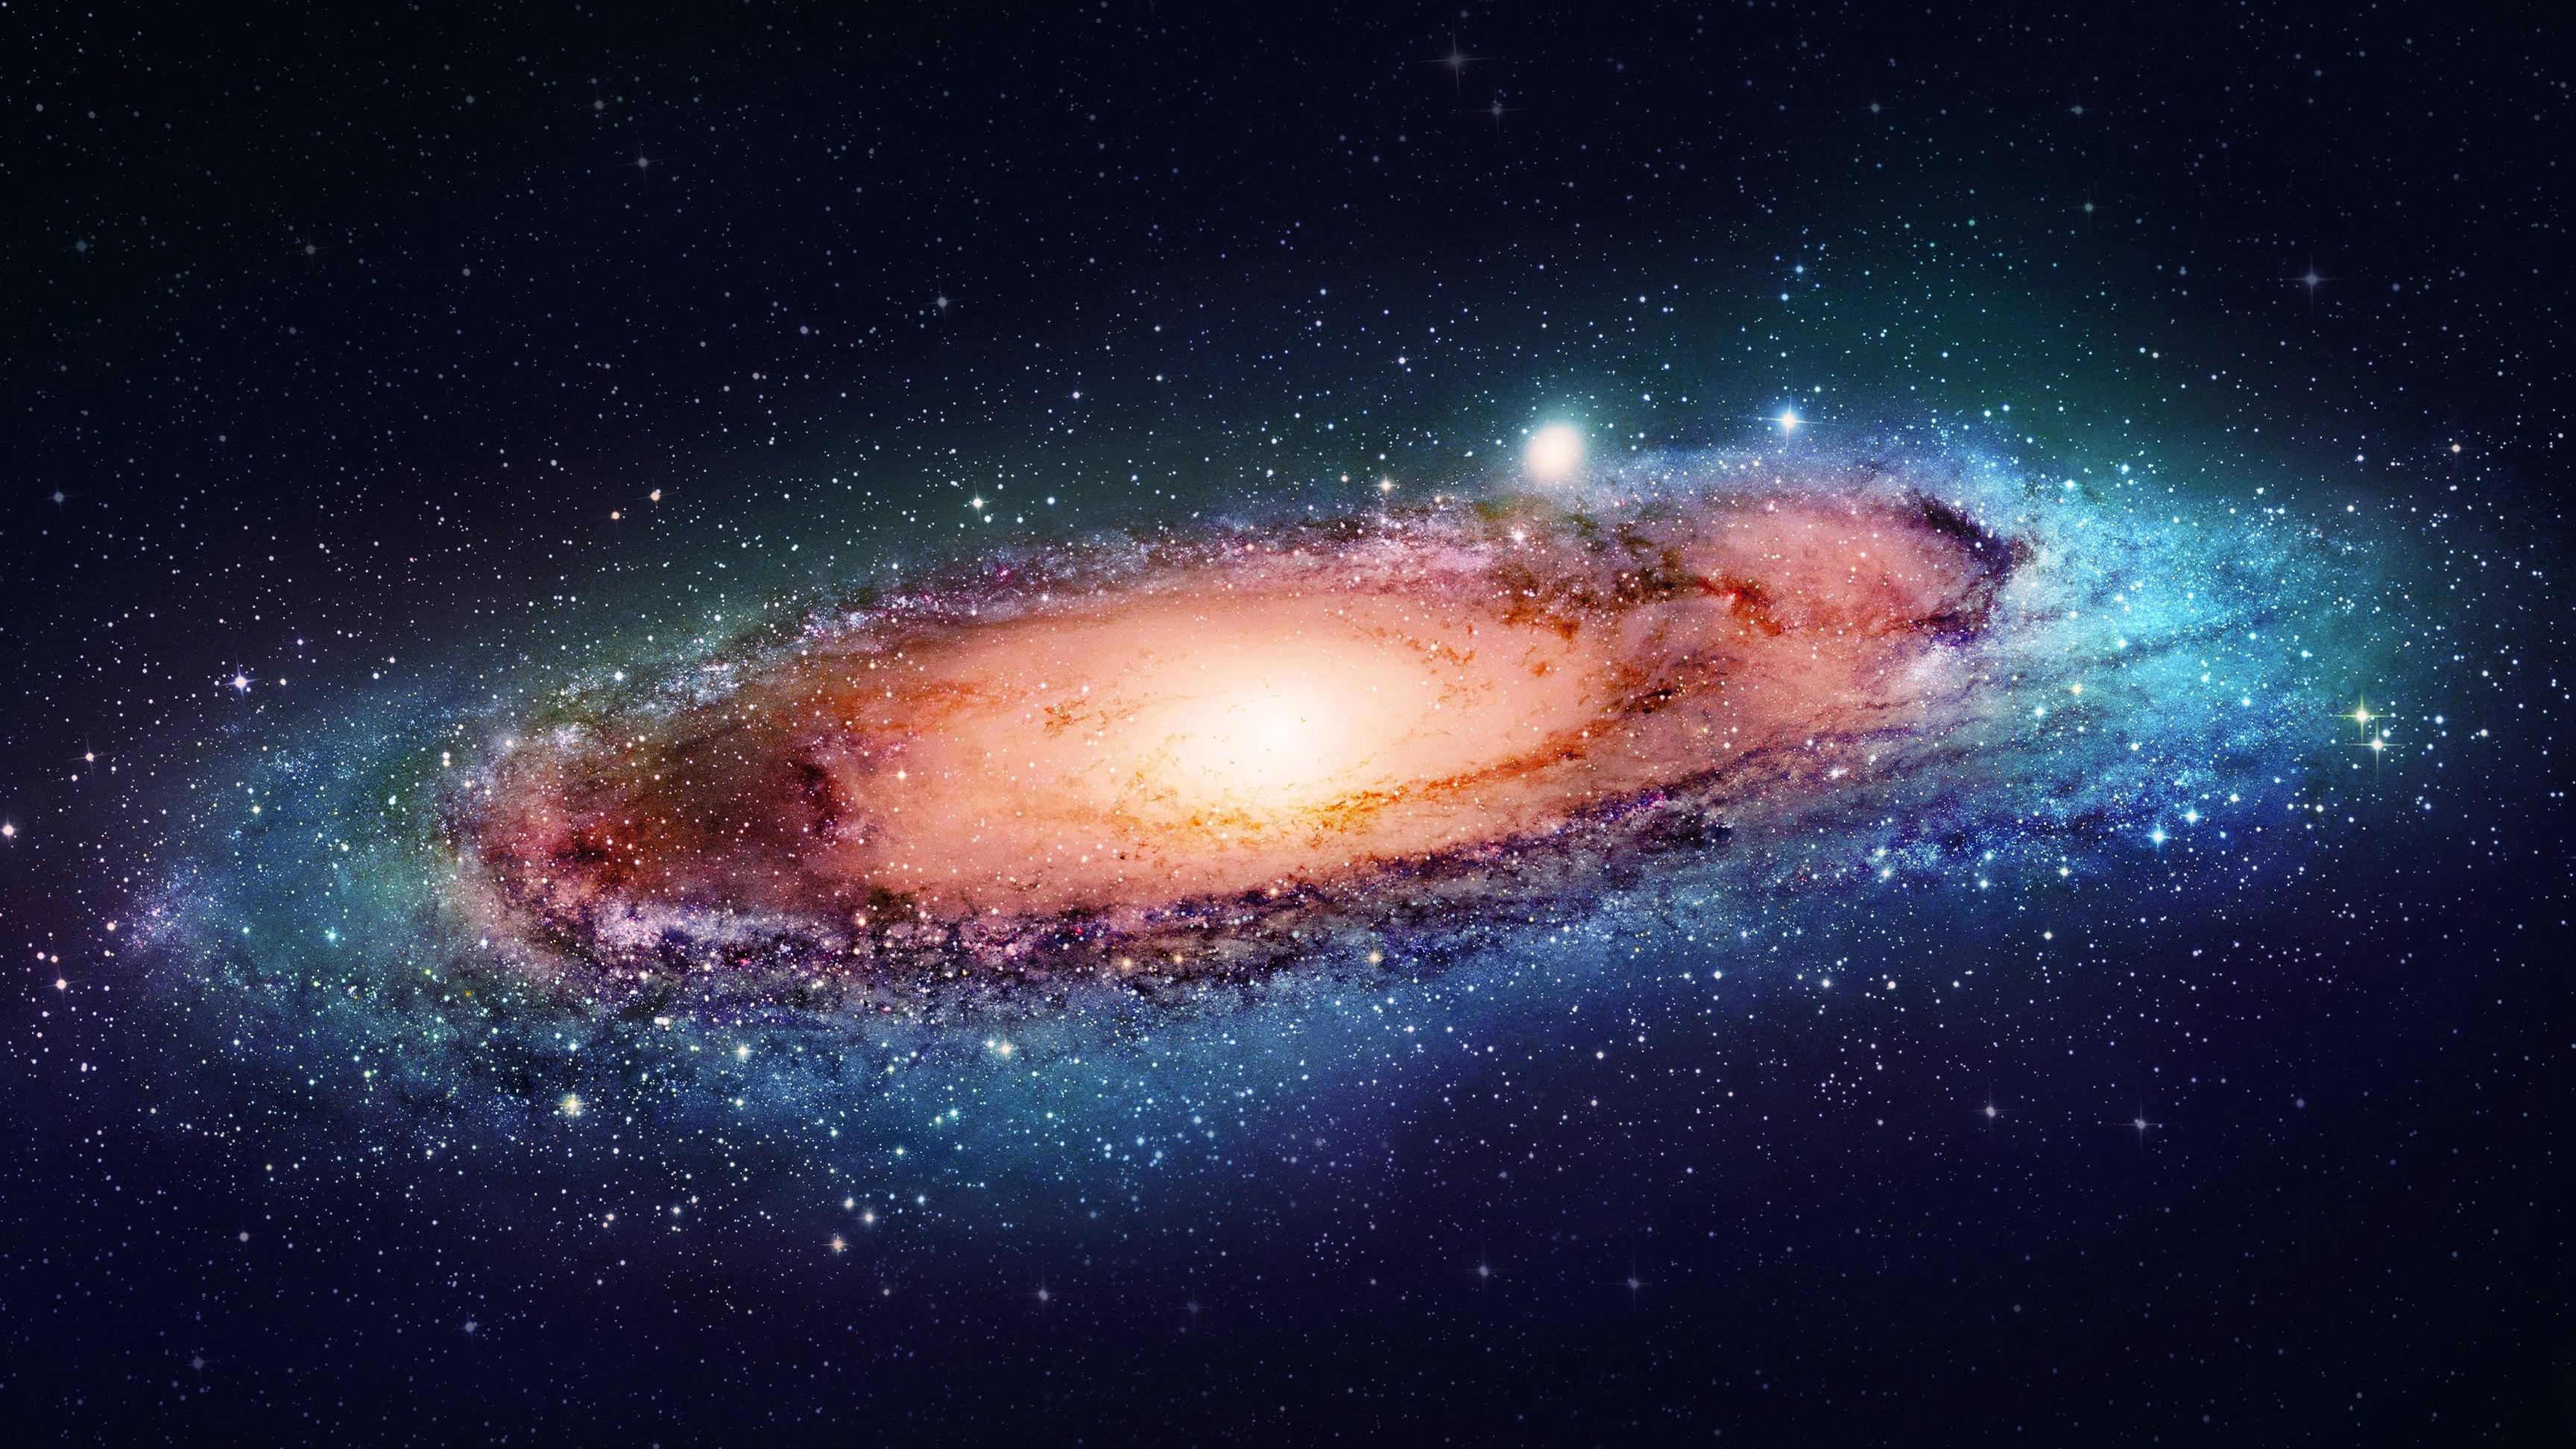 Thiên hà xoắn ốc là một trong những thứ tuyệt vời nhất của vũ trụ. Những hình ảnh về thiên hà xoắn ốc sẽ khiến bạn cảm thấy thích thú. Phong cảnh độc đáo và kỳ diệu sẽ khiến bạn cảm thấy như mình đang tự mình ra khám phá vũ trụ.